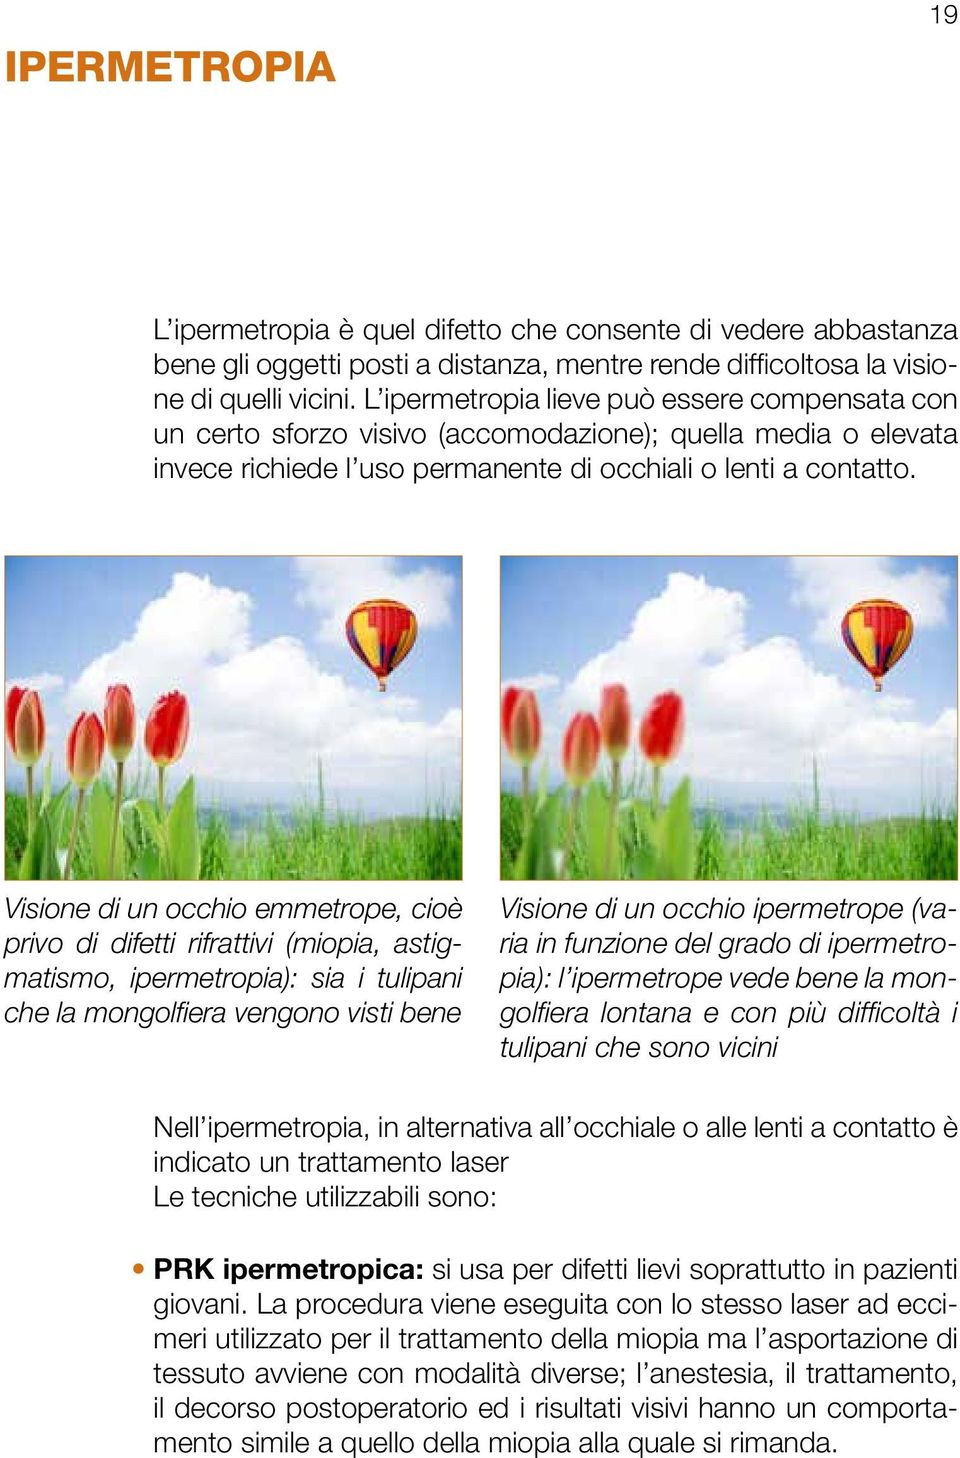 Visione di un occhio emmetrope, cioè privo di difetti rifrattivi (miopia, astigmatismo, ipermetropia): sia i tulipani che la mongolfiera vengono visti bene Visione di un occhio ipermetrope (varia in